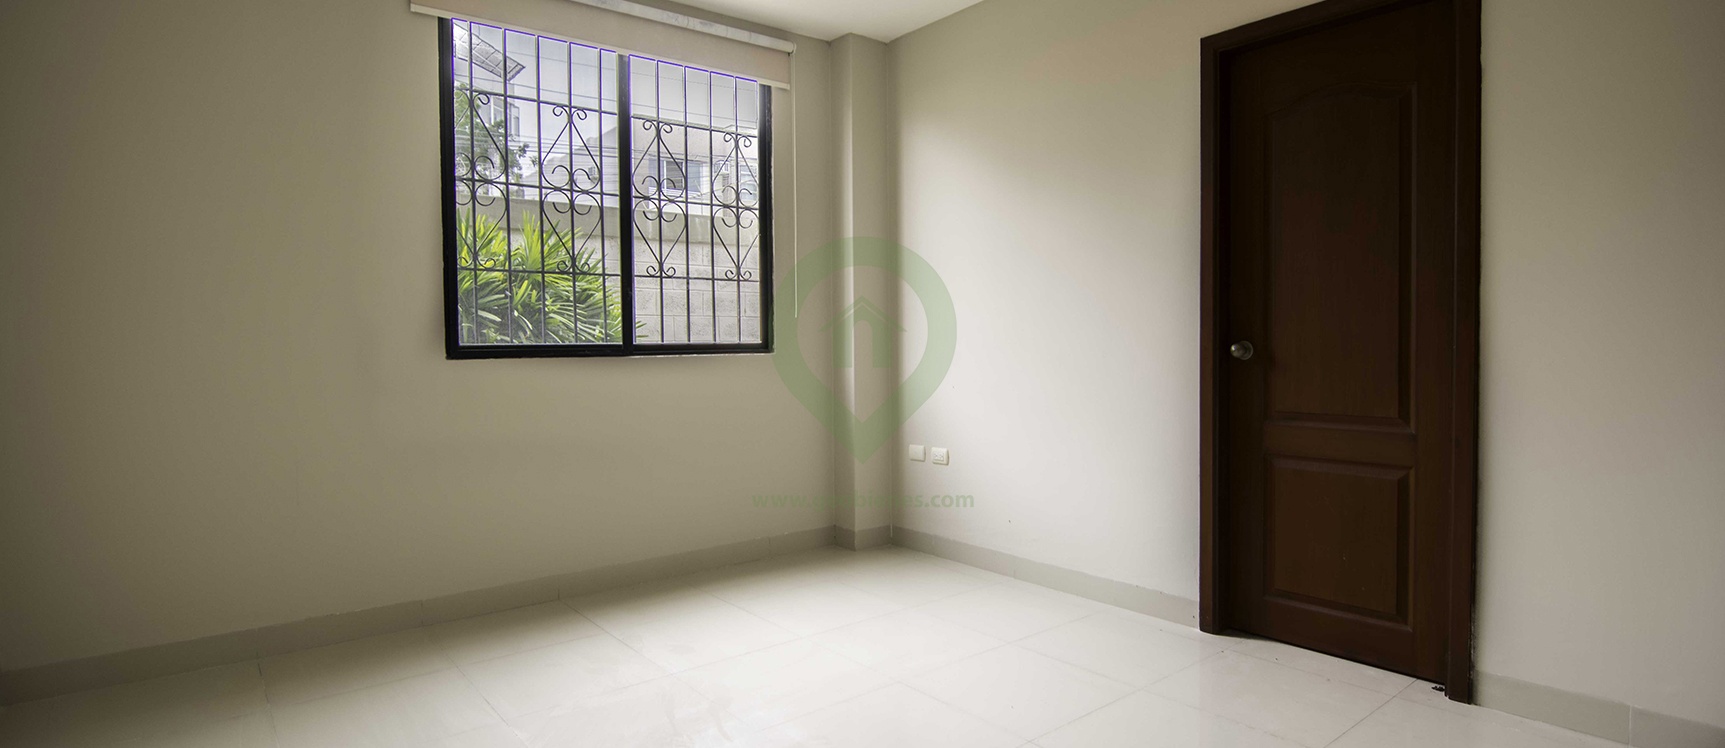 GeoBienes - Departamento en Alquiler en Santa Cecilia Vía a La Costa - Guayaquil - Plusvalia Guayaquil Casas de venta y alquiler Inmobiliaria Ecuador